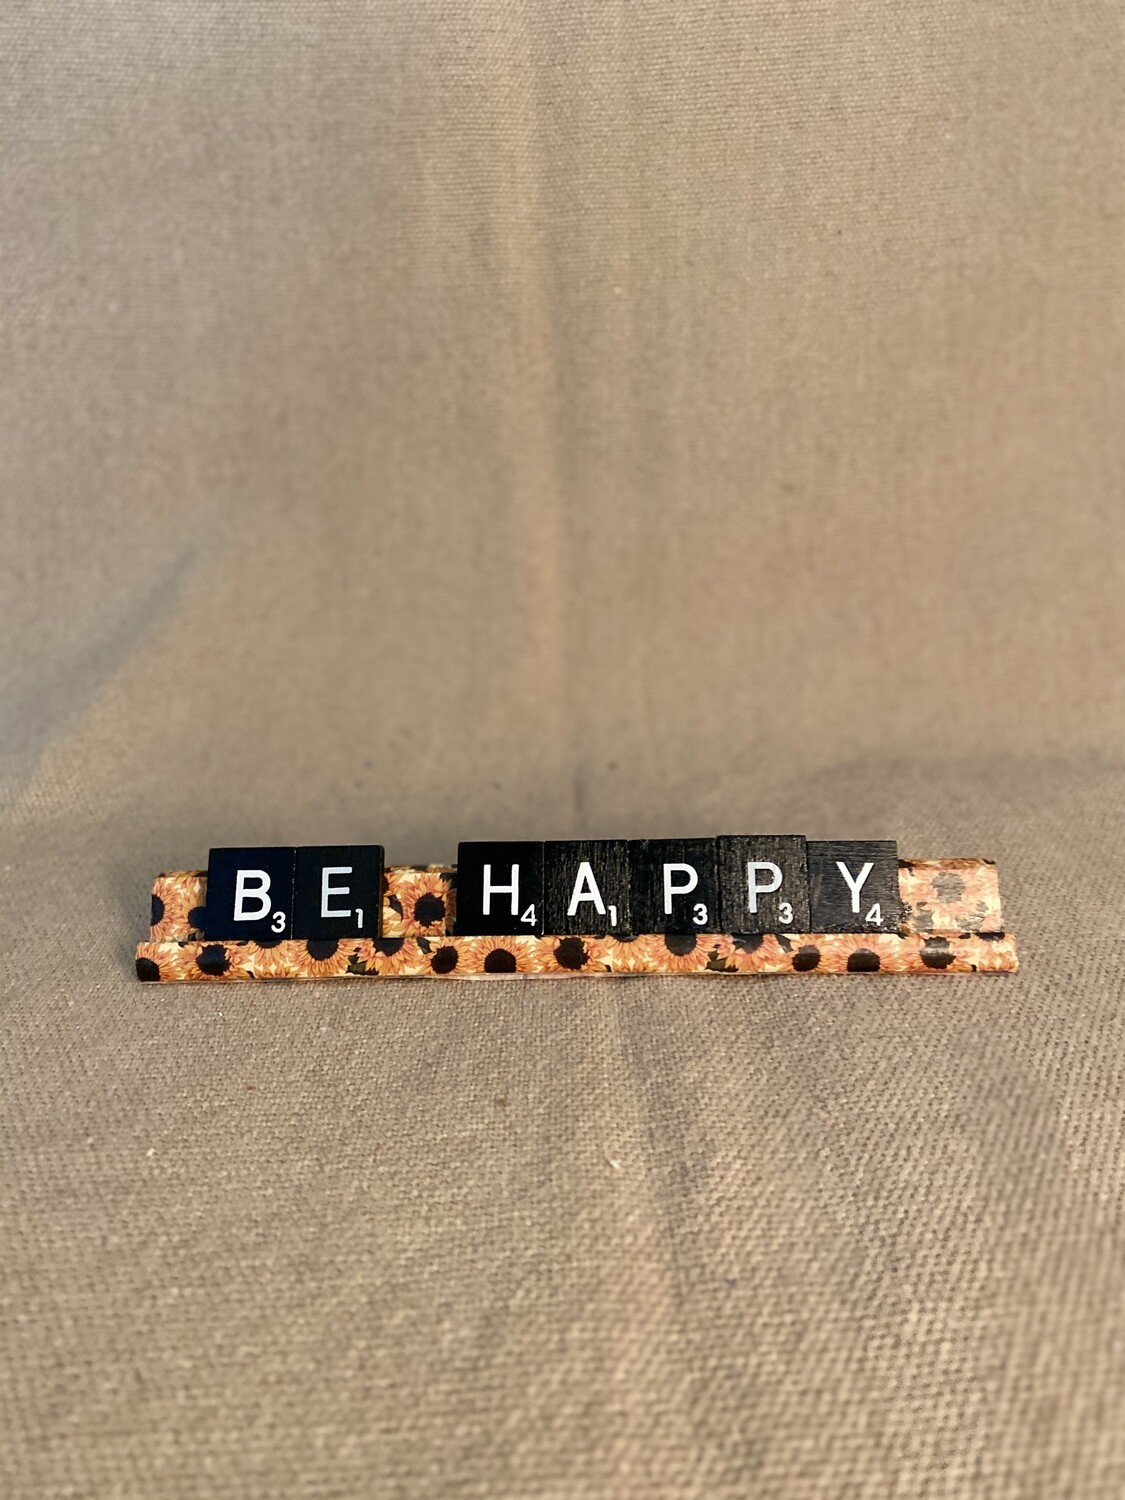 Be Happy Lg. Decorative Scrabble Tray 7&quot;L x 0.75&quot;H